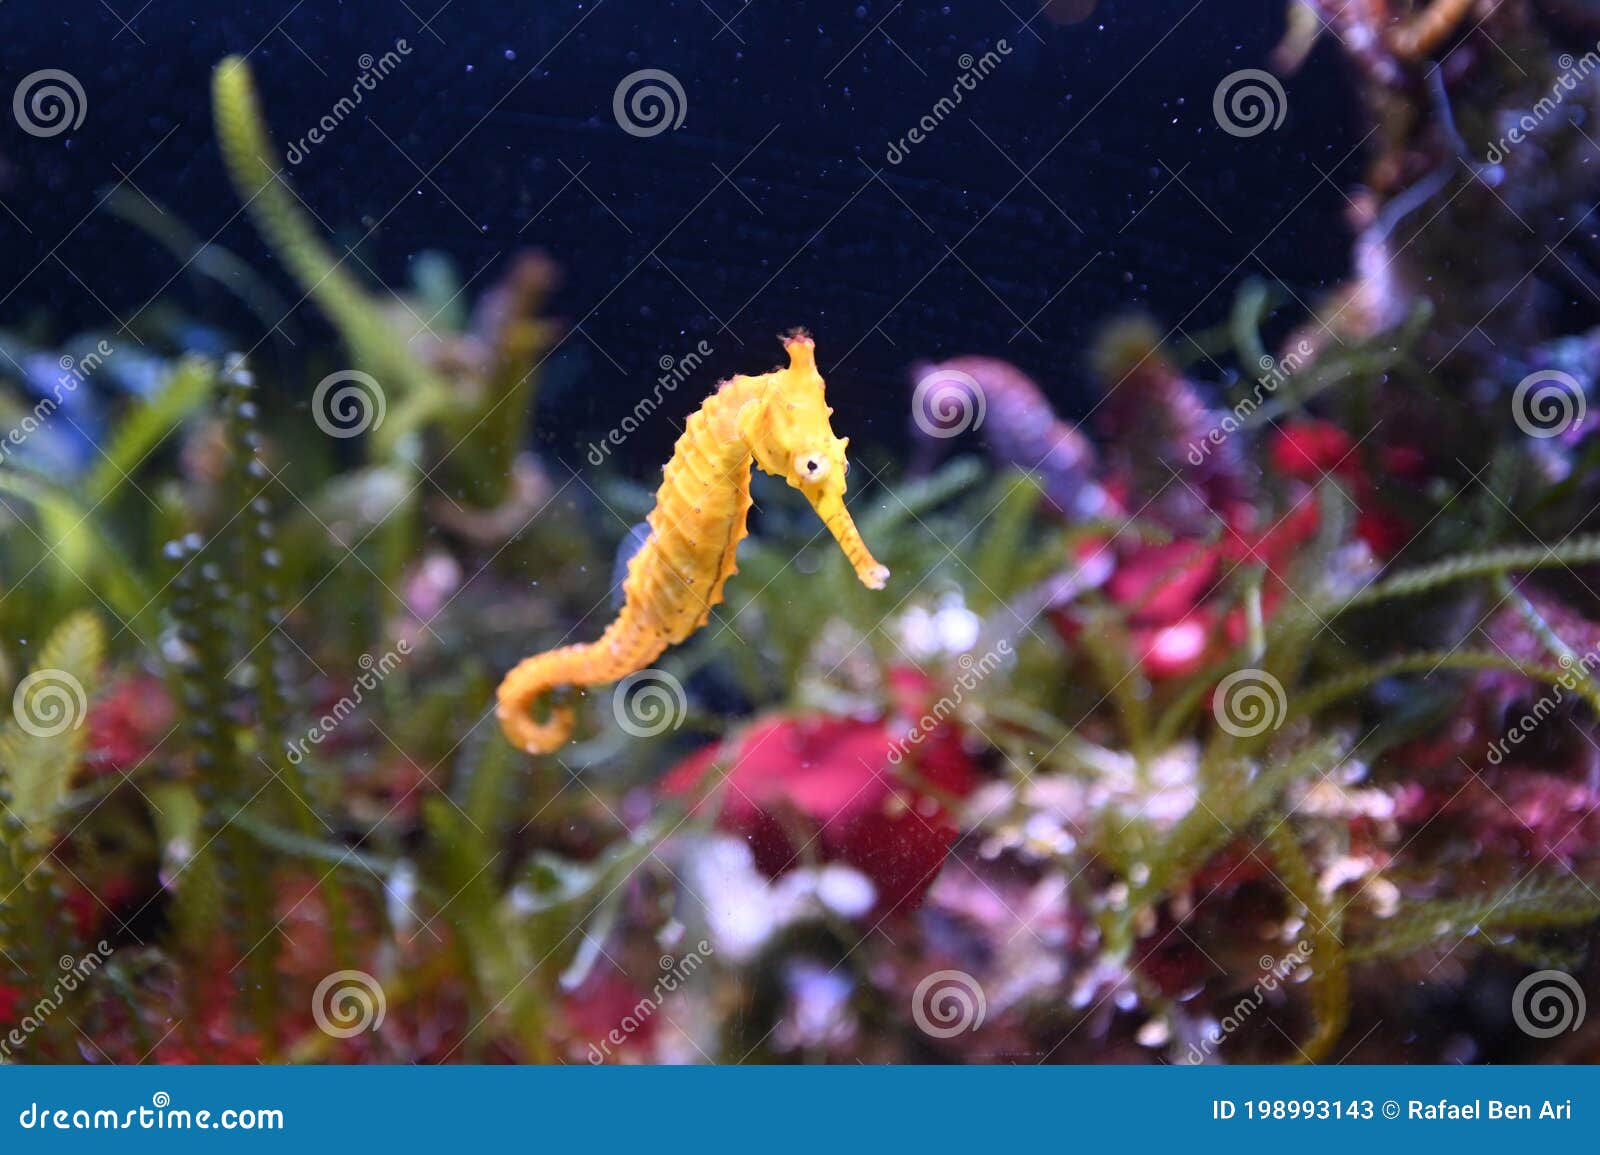 tiger snout seahorse west australian seahorse